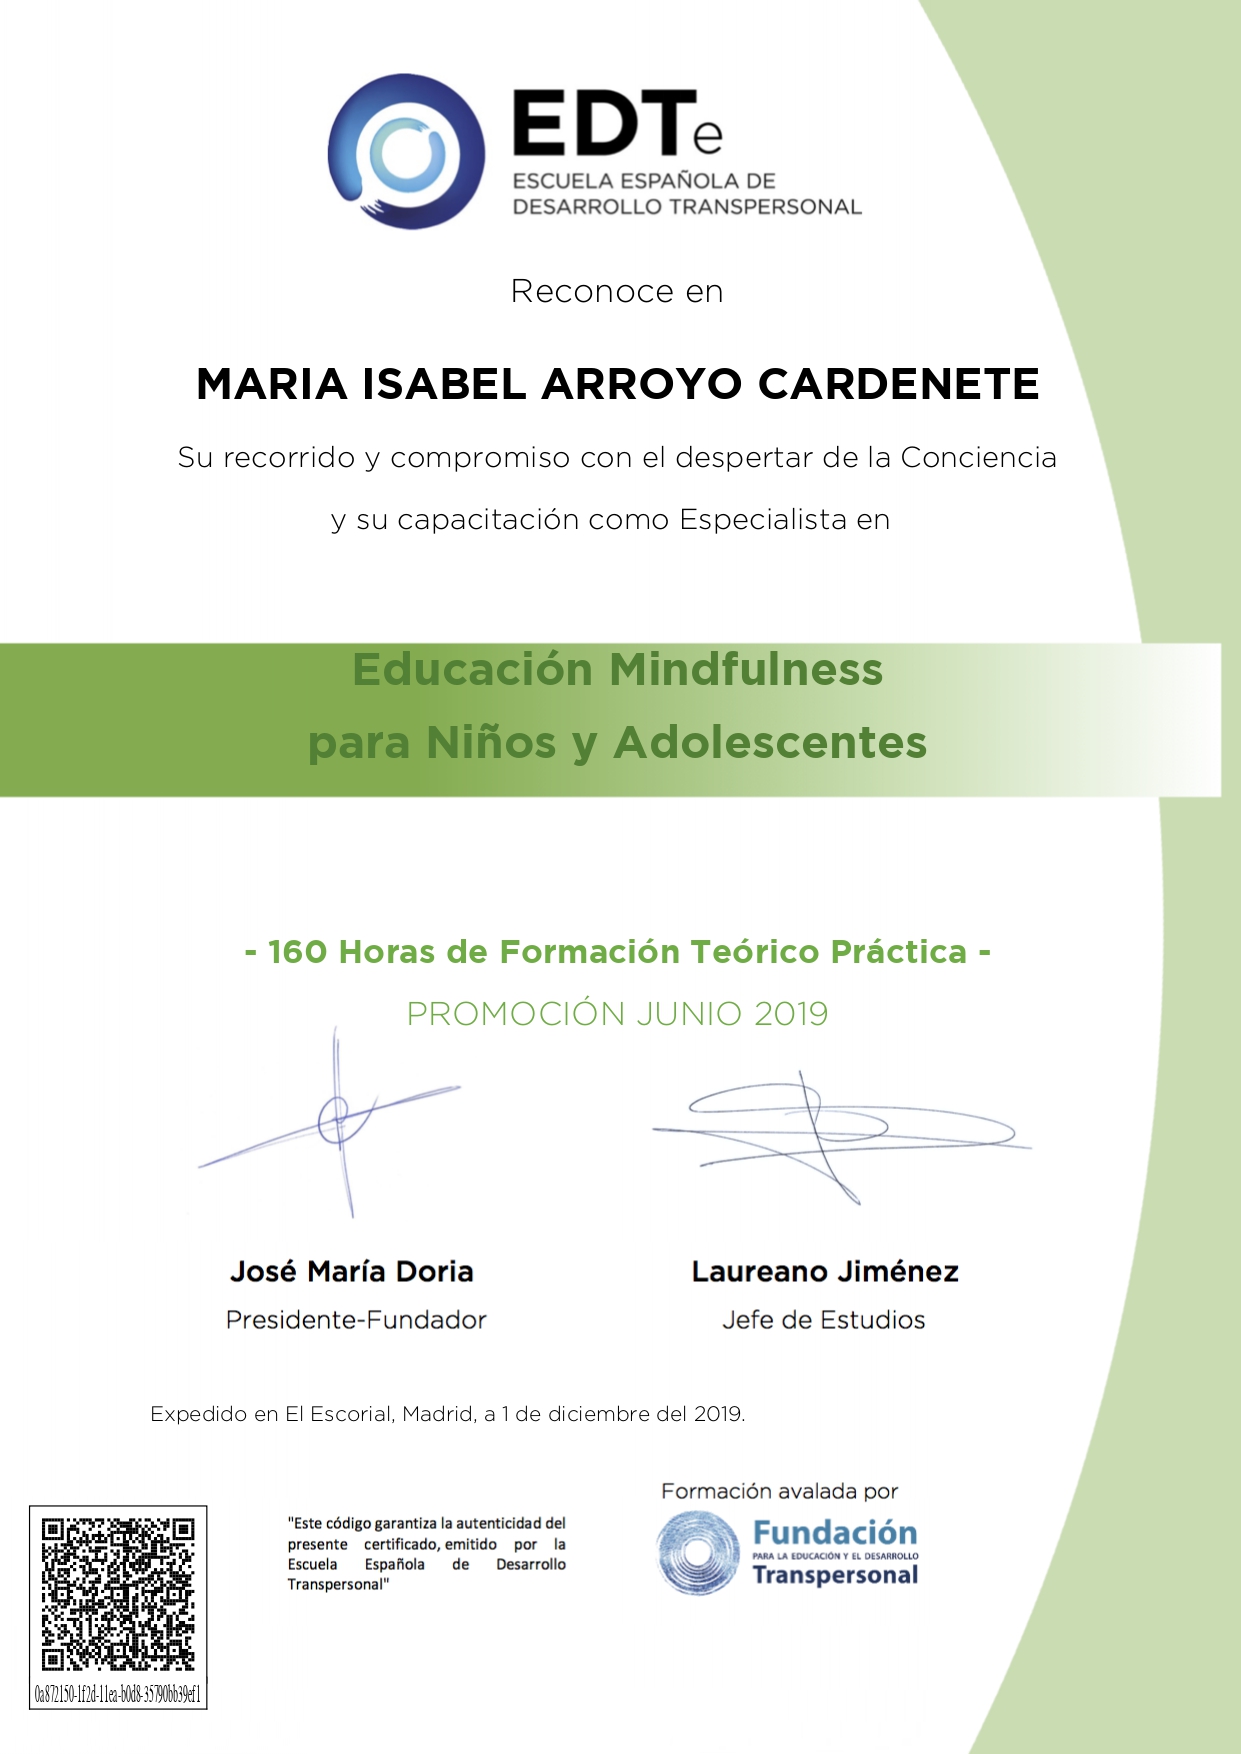 Educación Mindfulness para niños y adolescentes, Mabel Arroyo